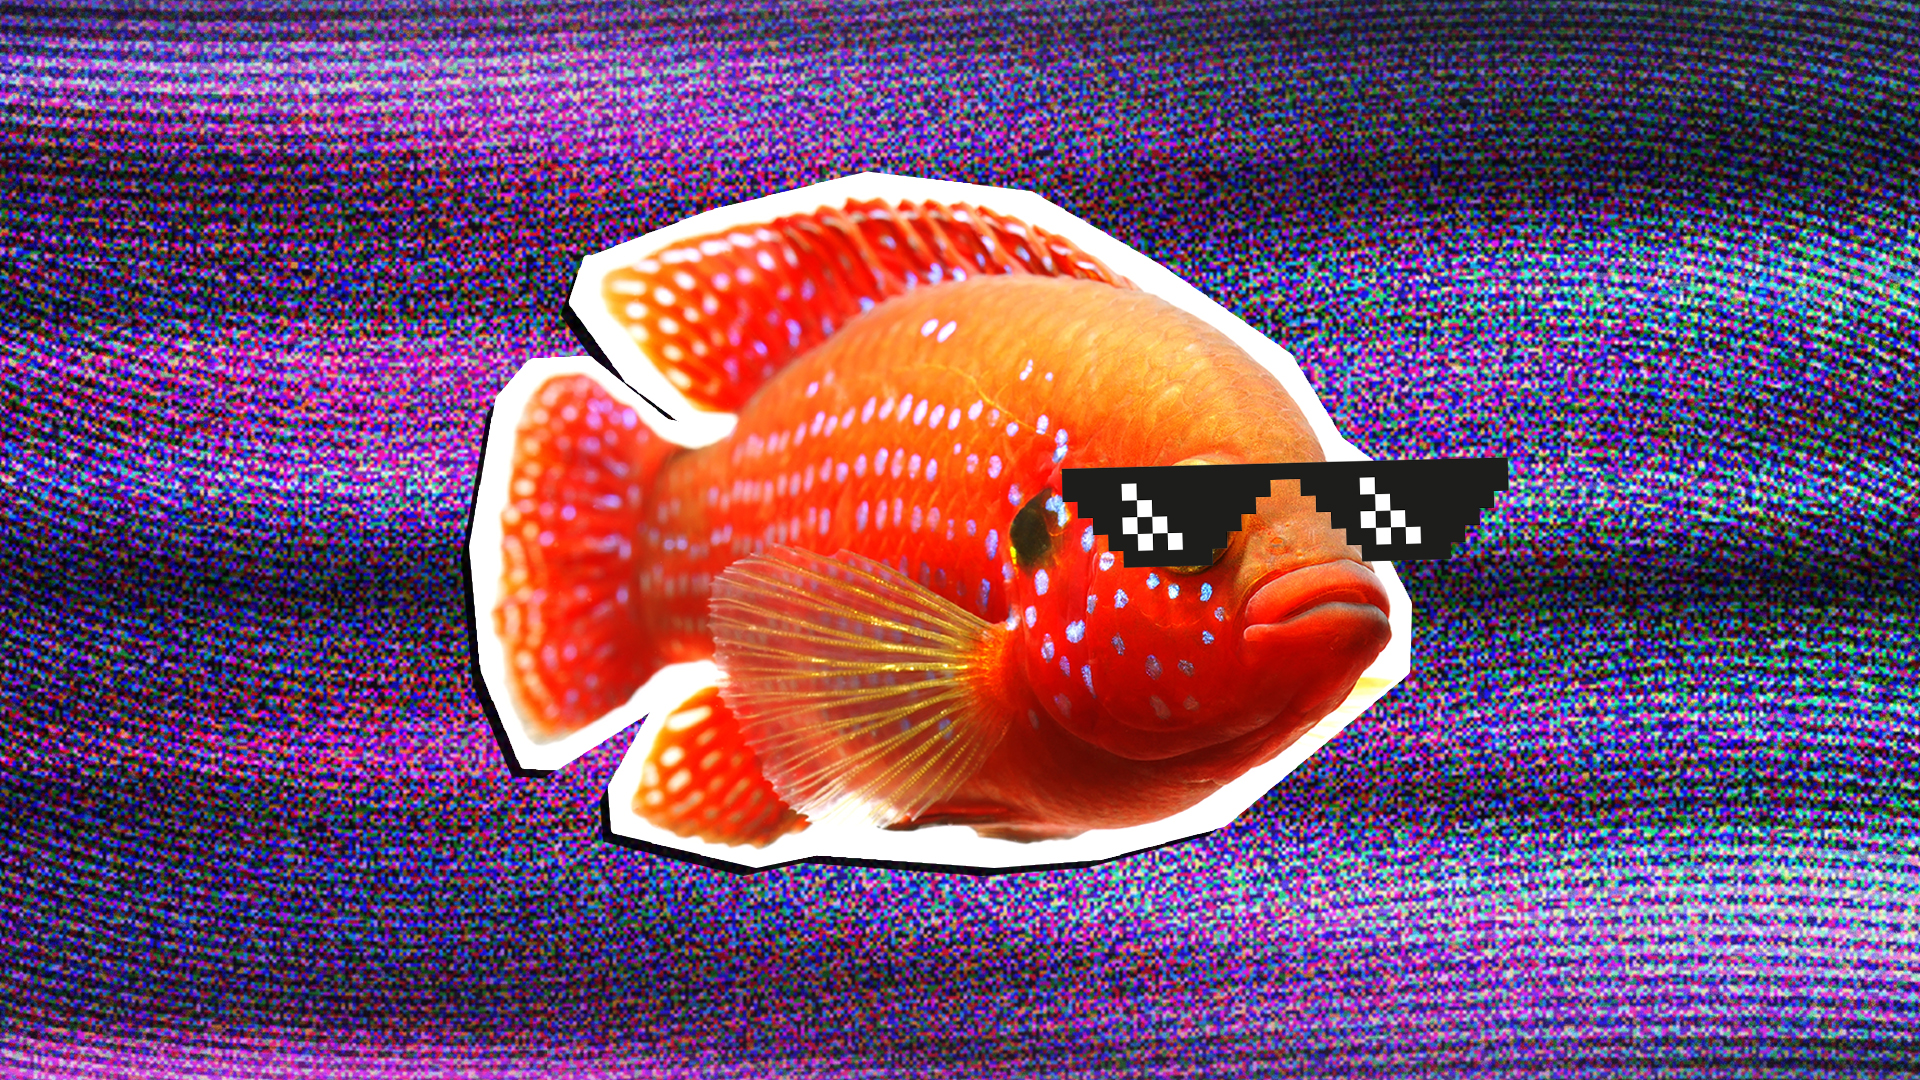 A goldfish wearing sunglasses